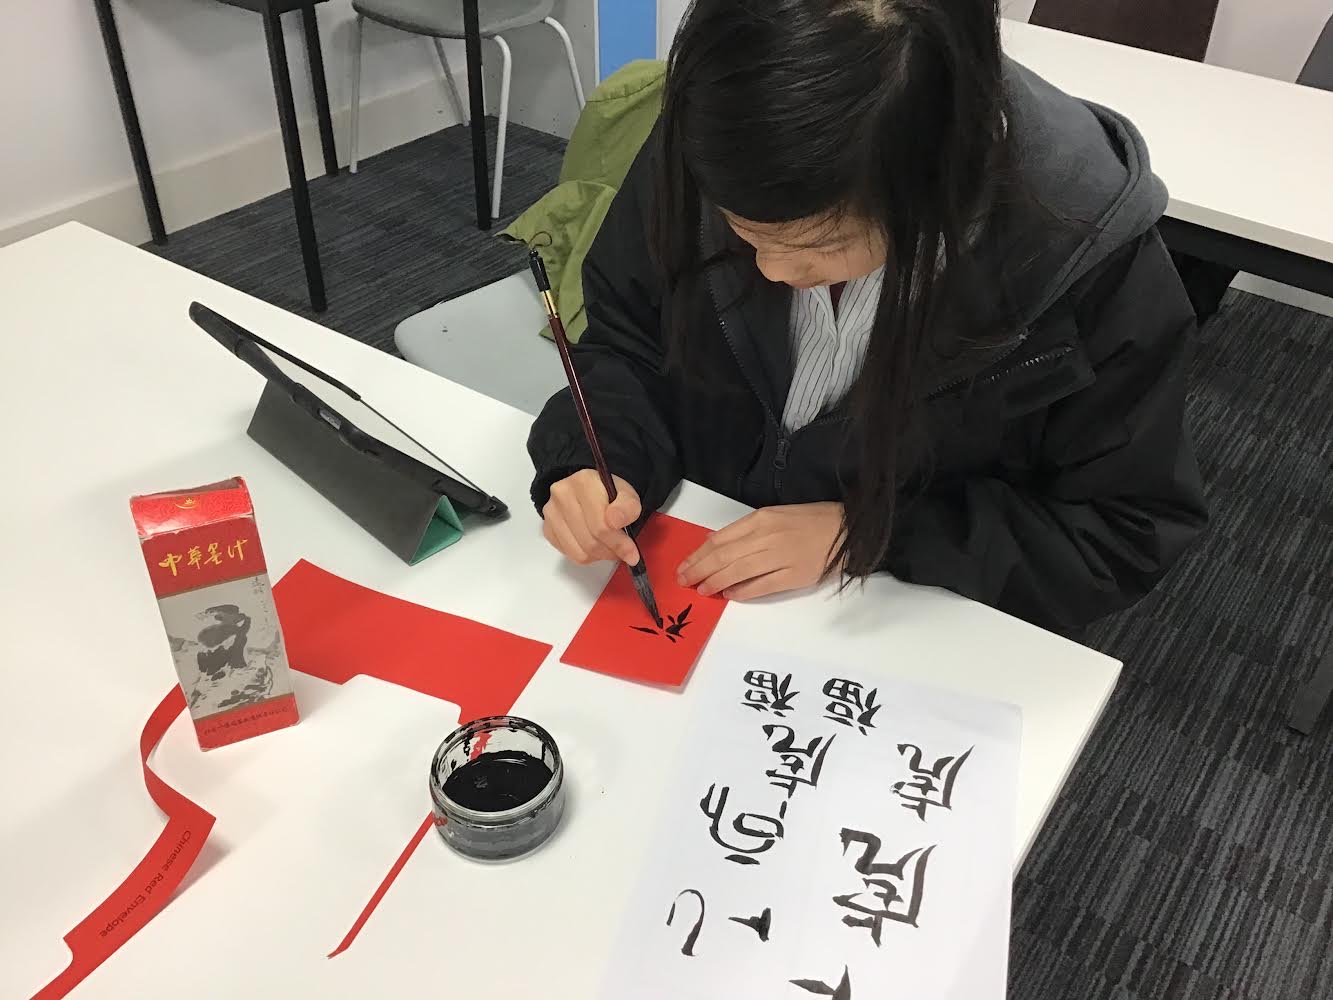 Chinese New Year - student calligraphy skills